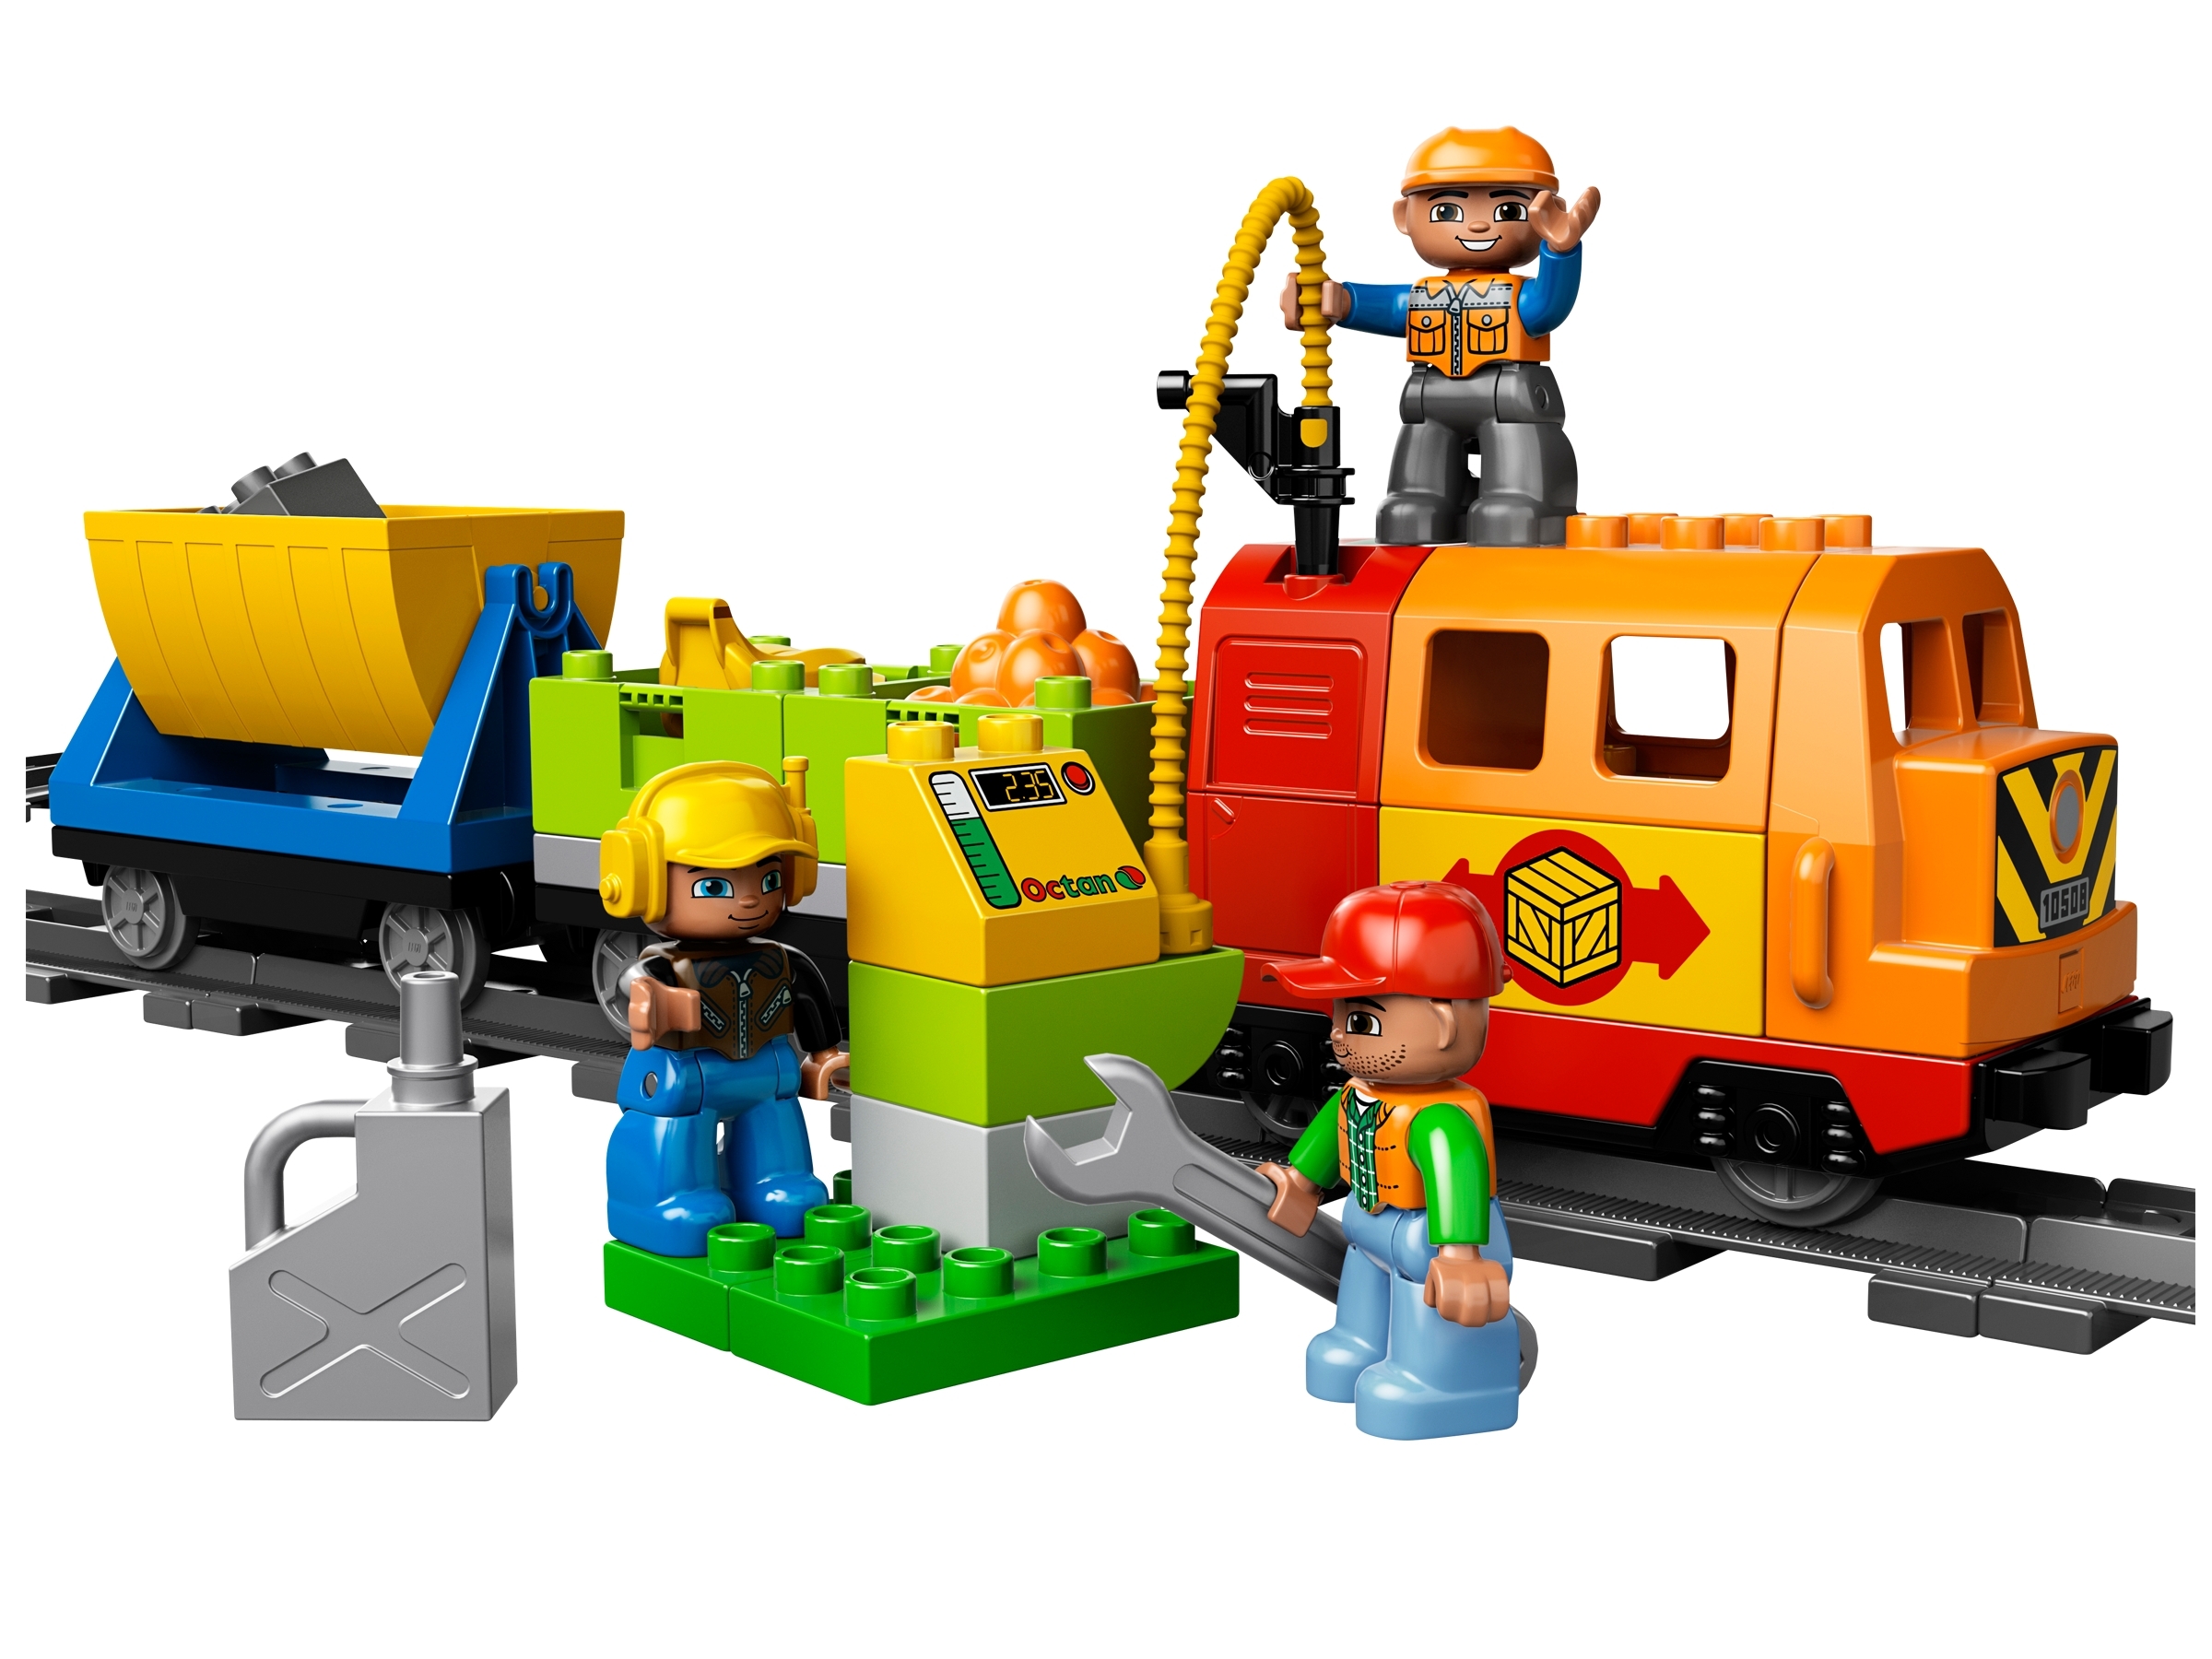 LEGO® DUPLO® Train by LEGO